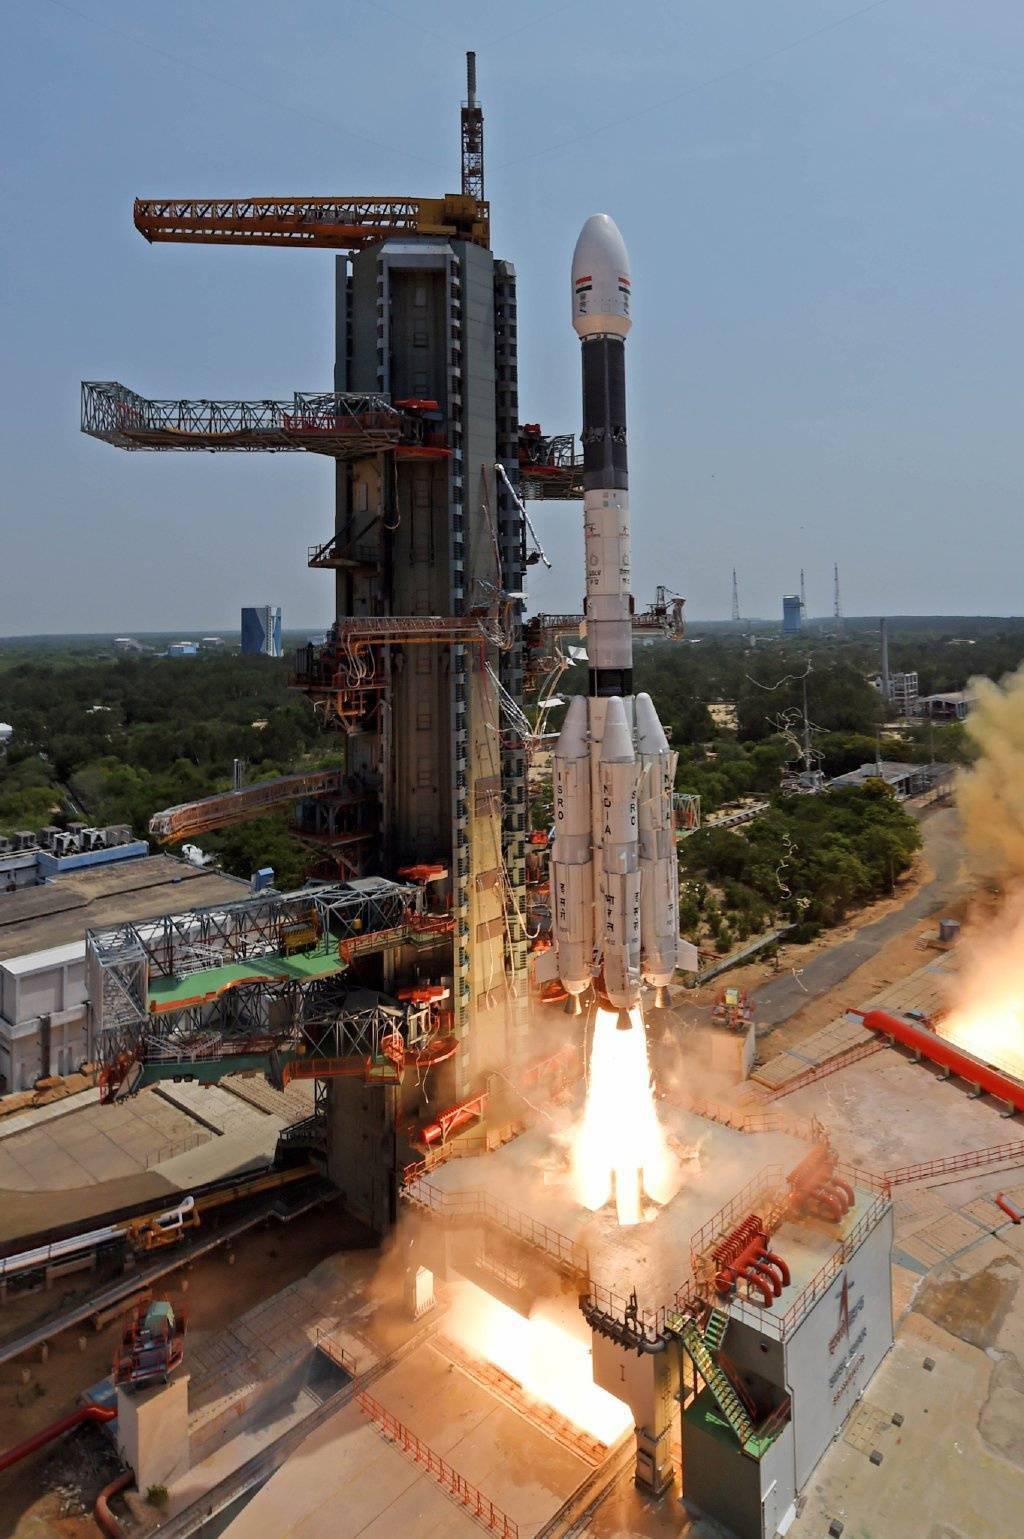 印度使用GSLV MKII运载火箭发射首颗二代IRNSS导航卫星NVS-01/GSLV-F12